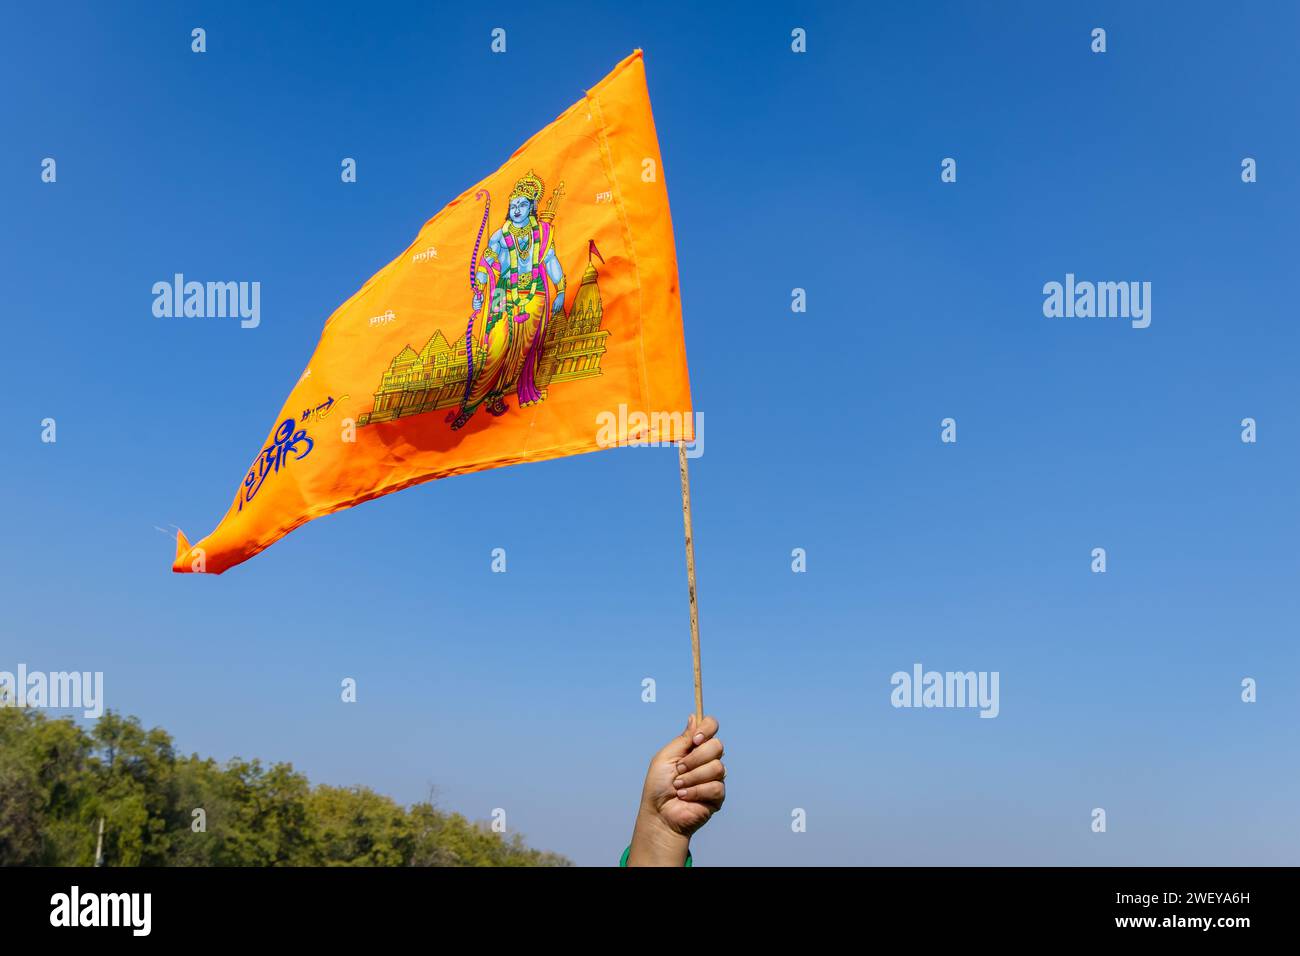 heilige Safranfahne mit Lord rama Idol in der Hand mit hellblauem Himmel Hintergrund am Tag Stockfoto